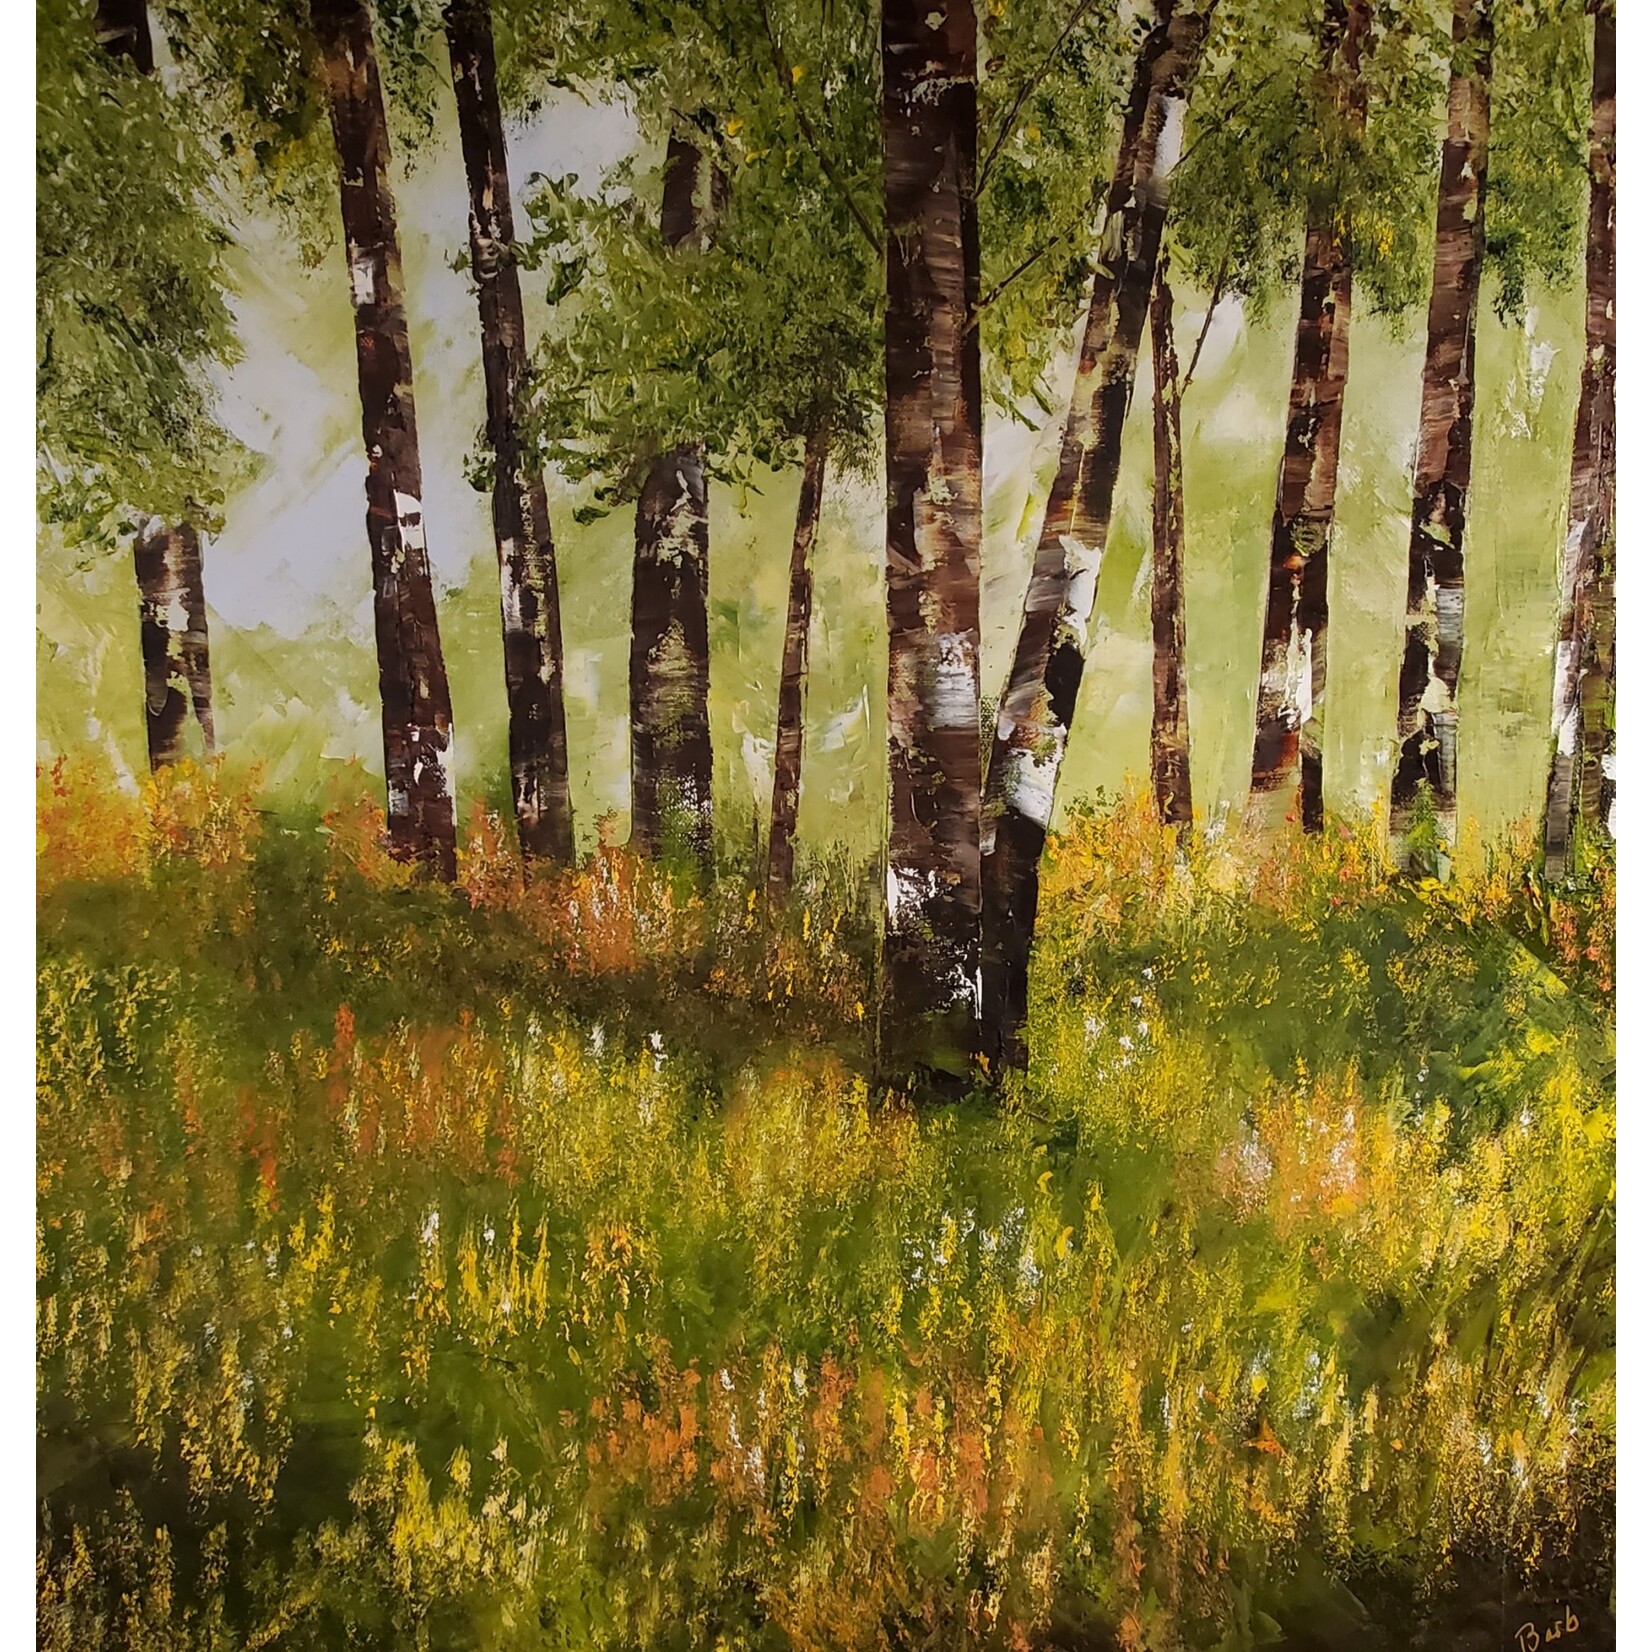 Barb Moniot "Sierra Meadows" - original oil on canvas - 24x24"